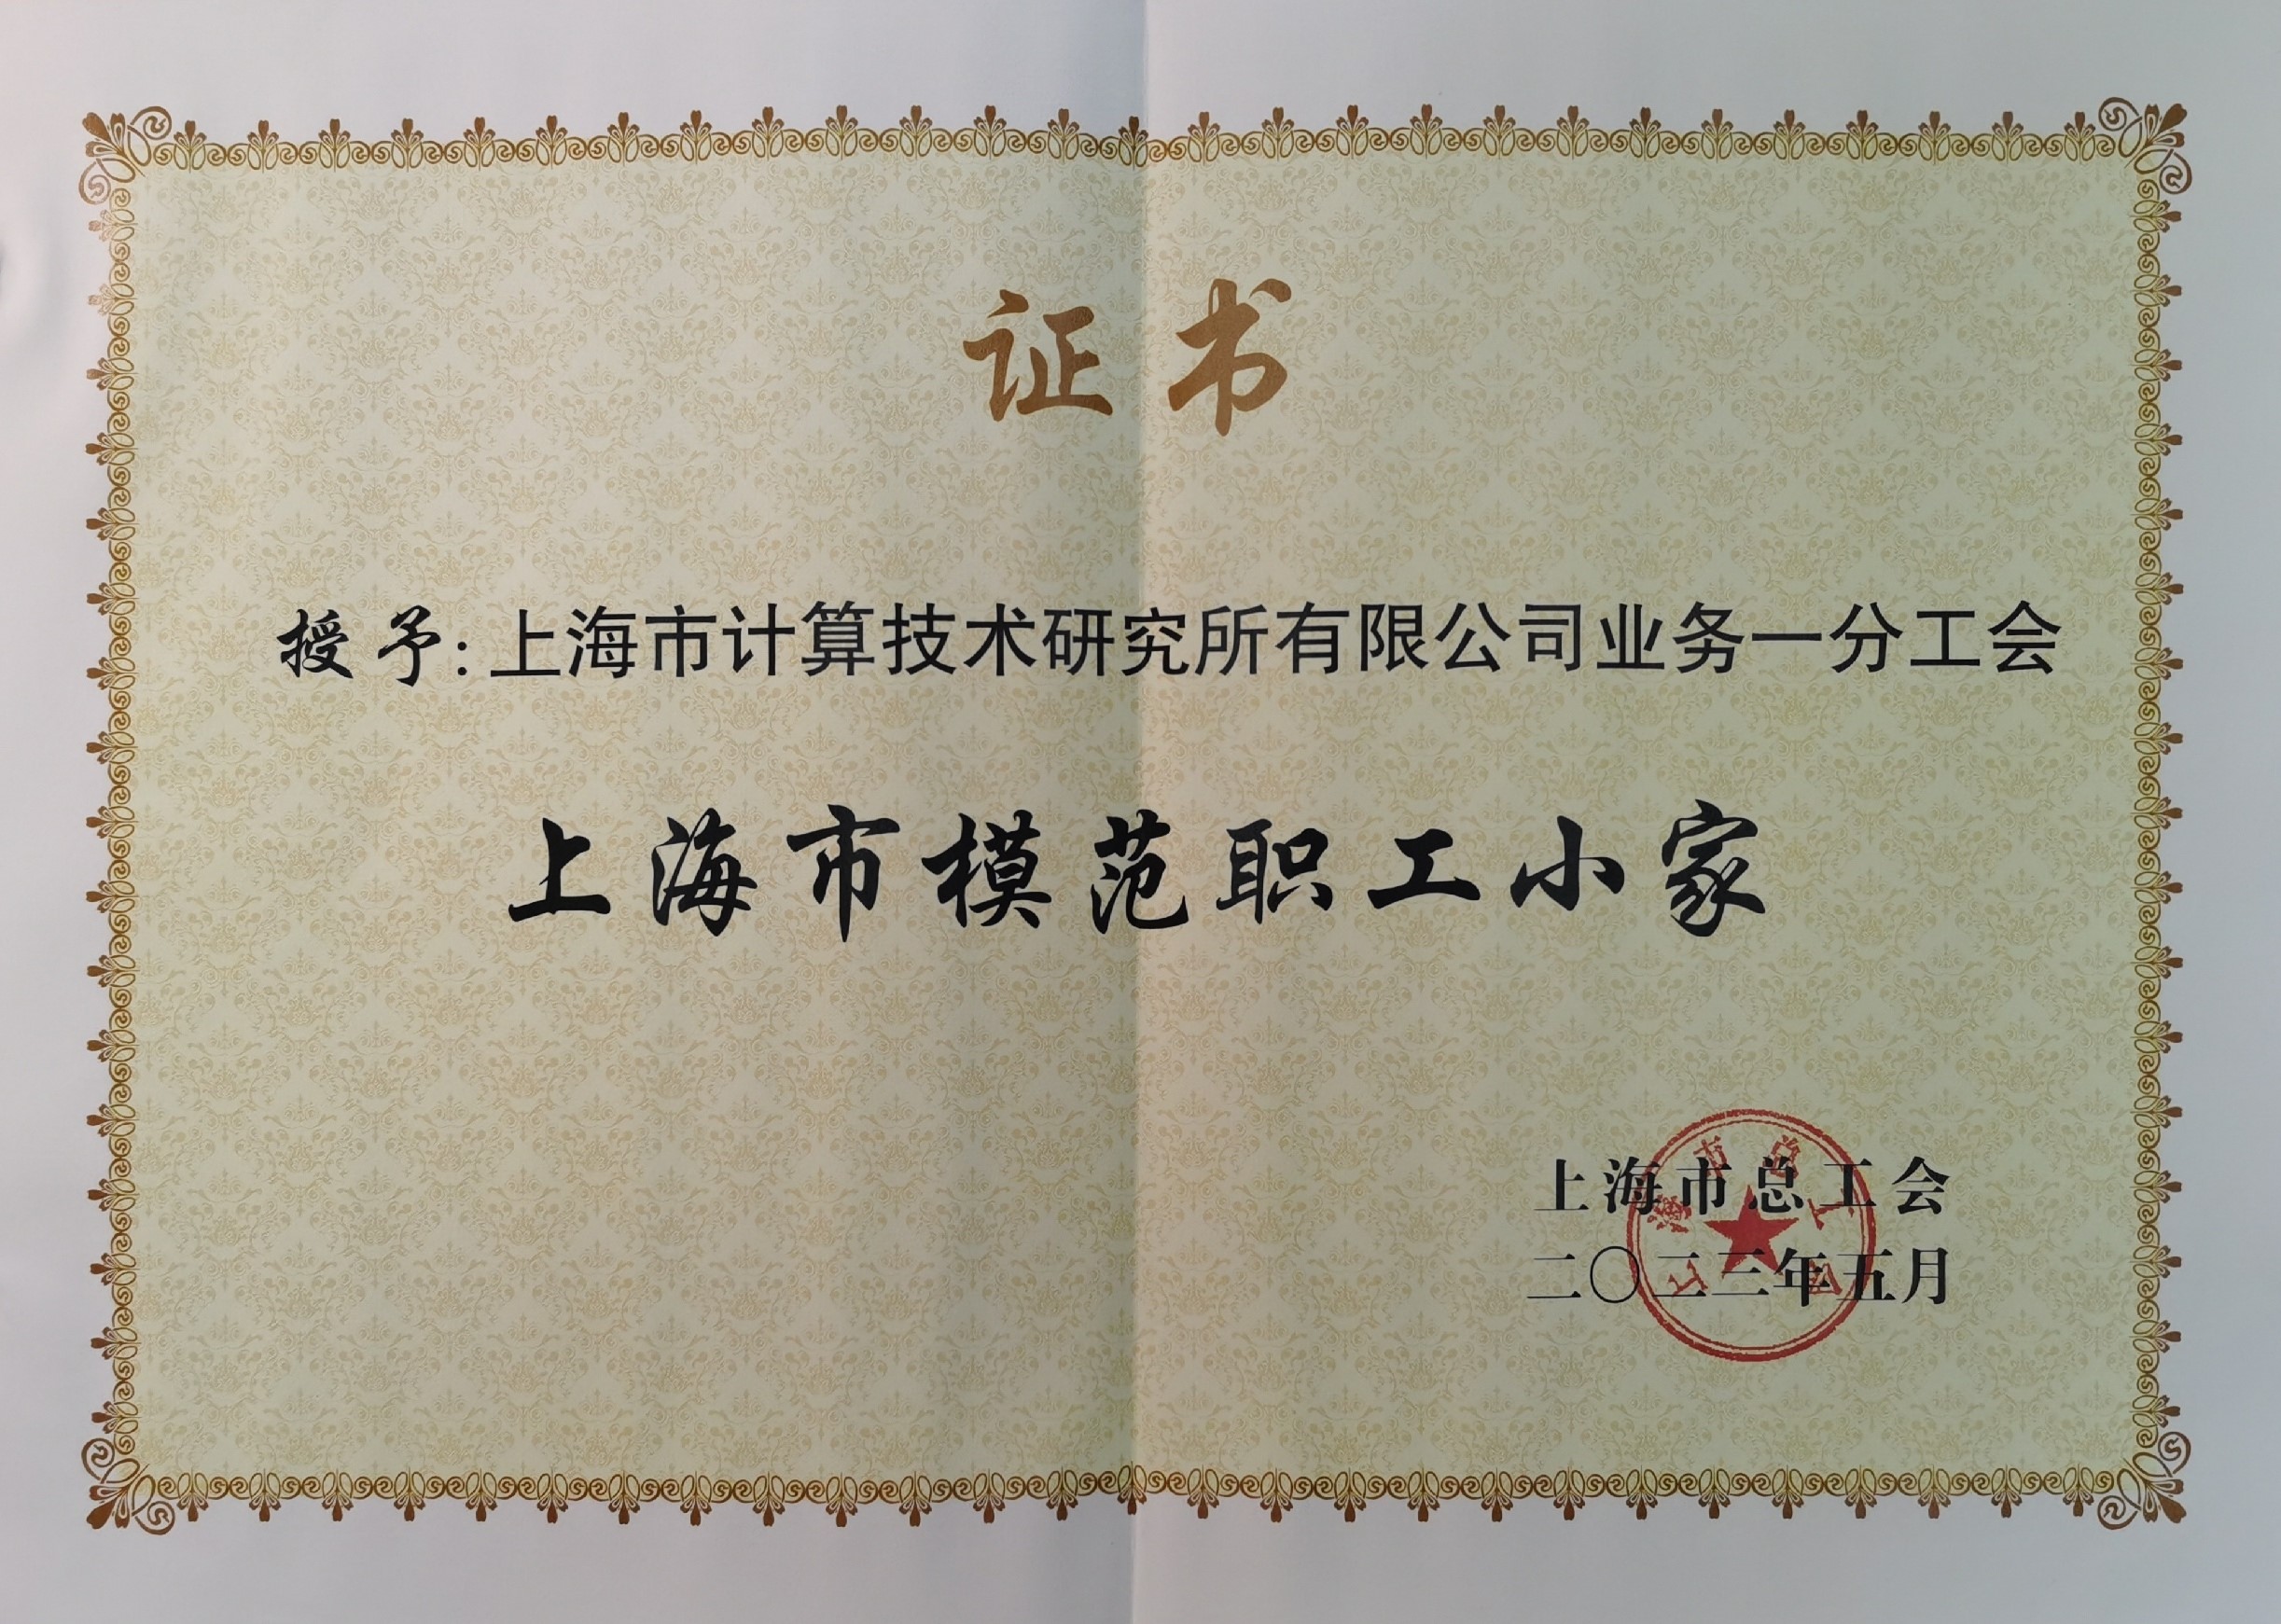 上海市计算技术研究所有限公司业务一分工会被授予“上海市模范职工小家”称号